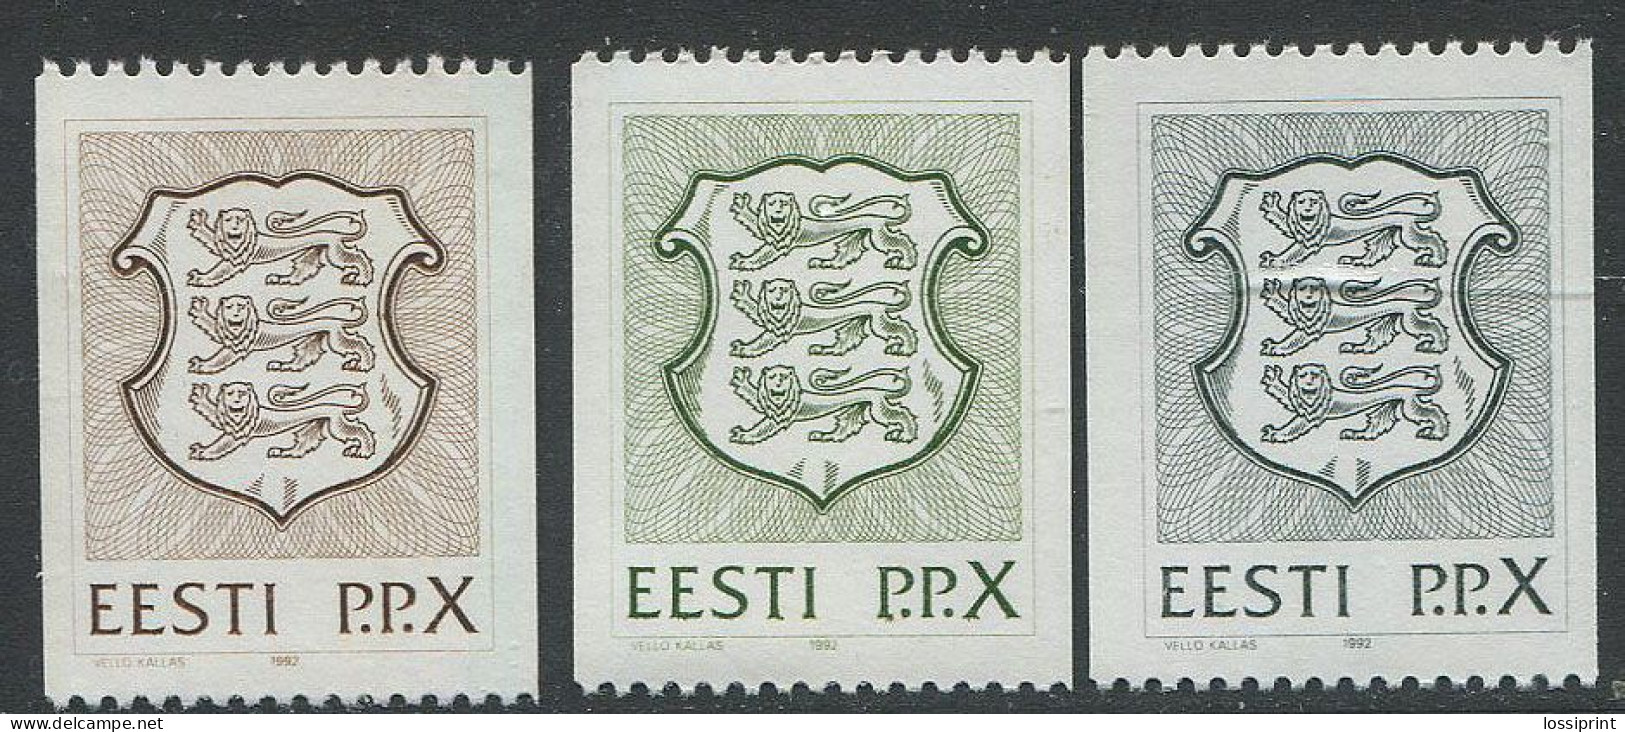 Estonia:Unused Stamps Estonia Coat Of Arm 3X P.P.X., 1992, MNH - Estonie